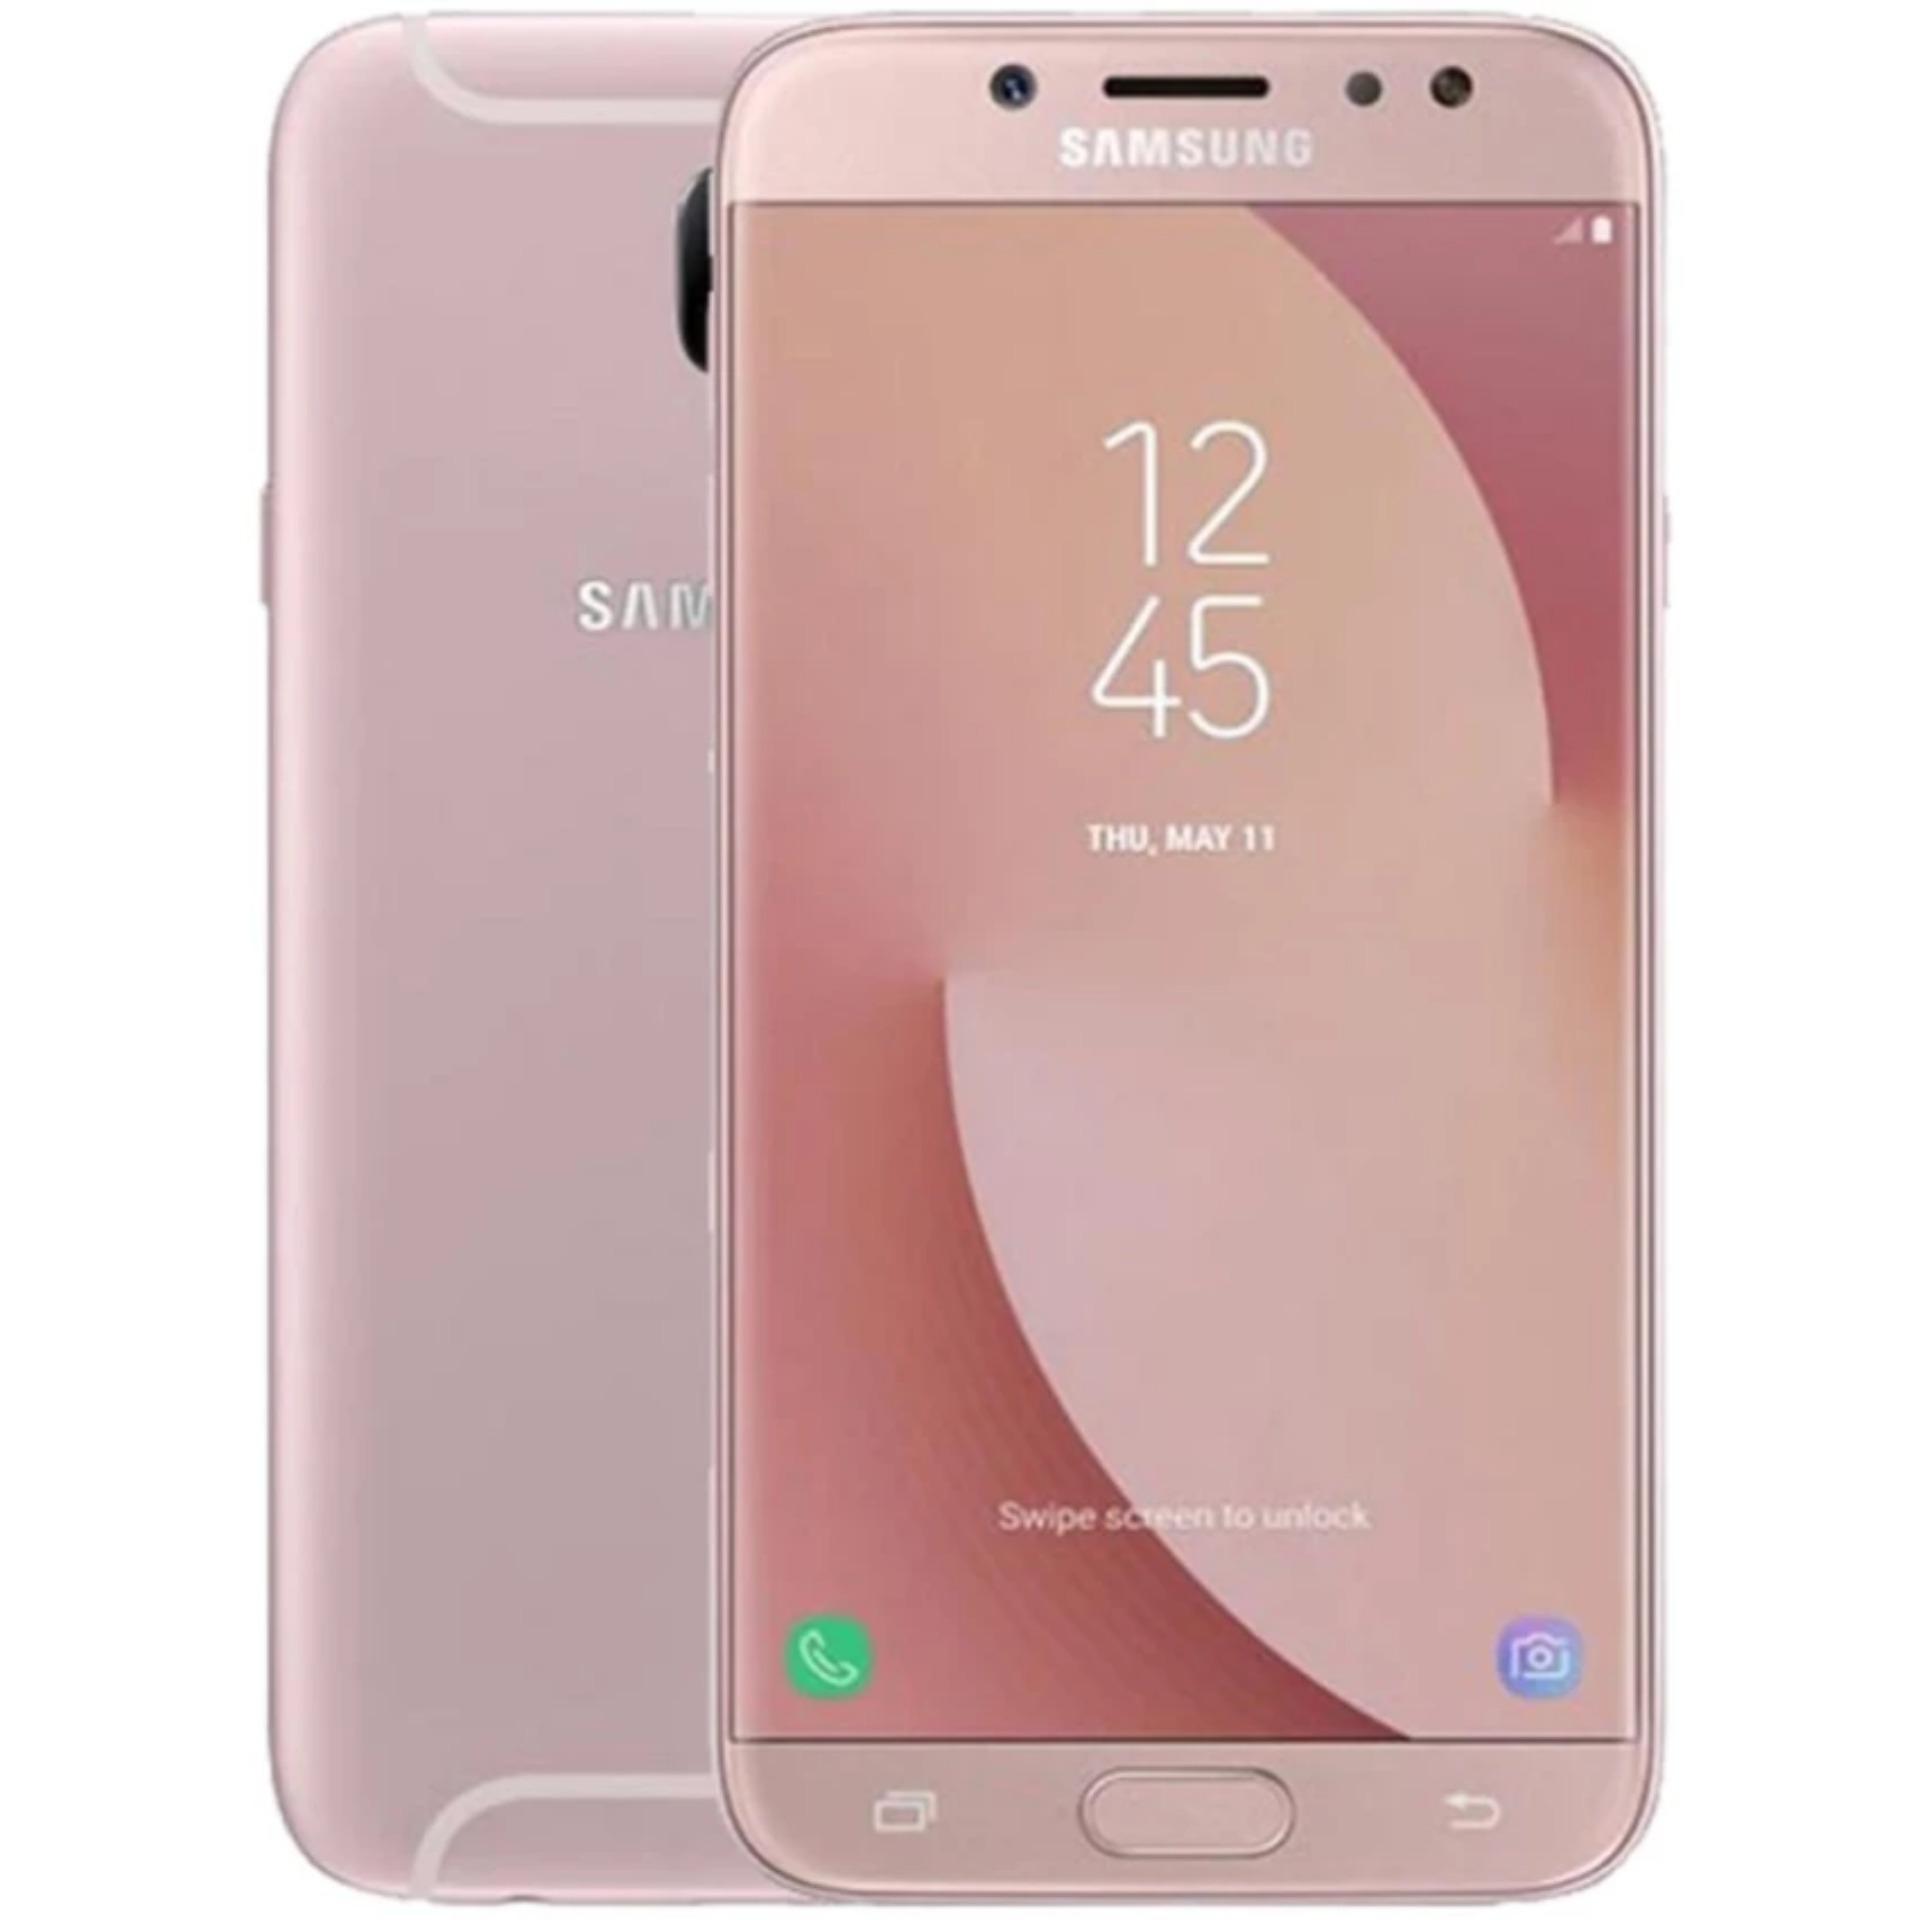 Samsung Galaxy J7 Pro 32GB (Hồng) - Hãng phân phối chính thức